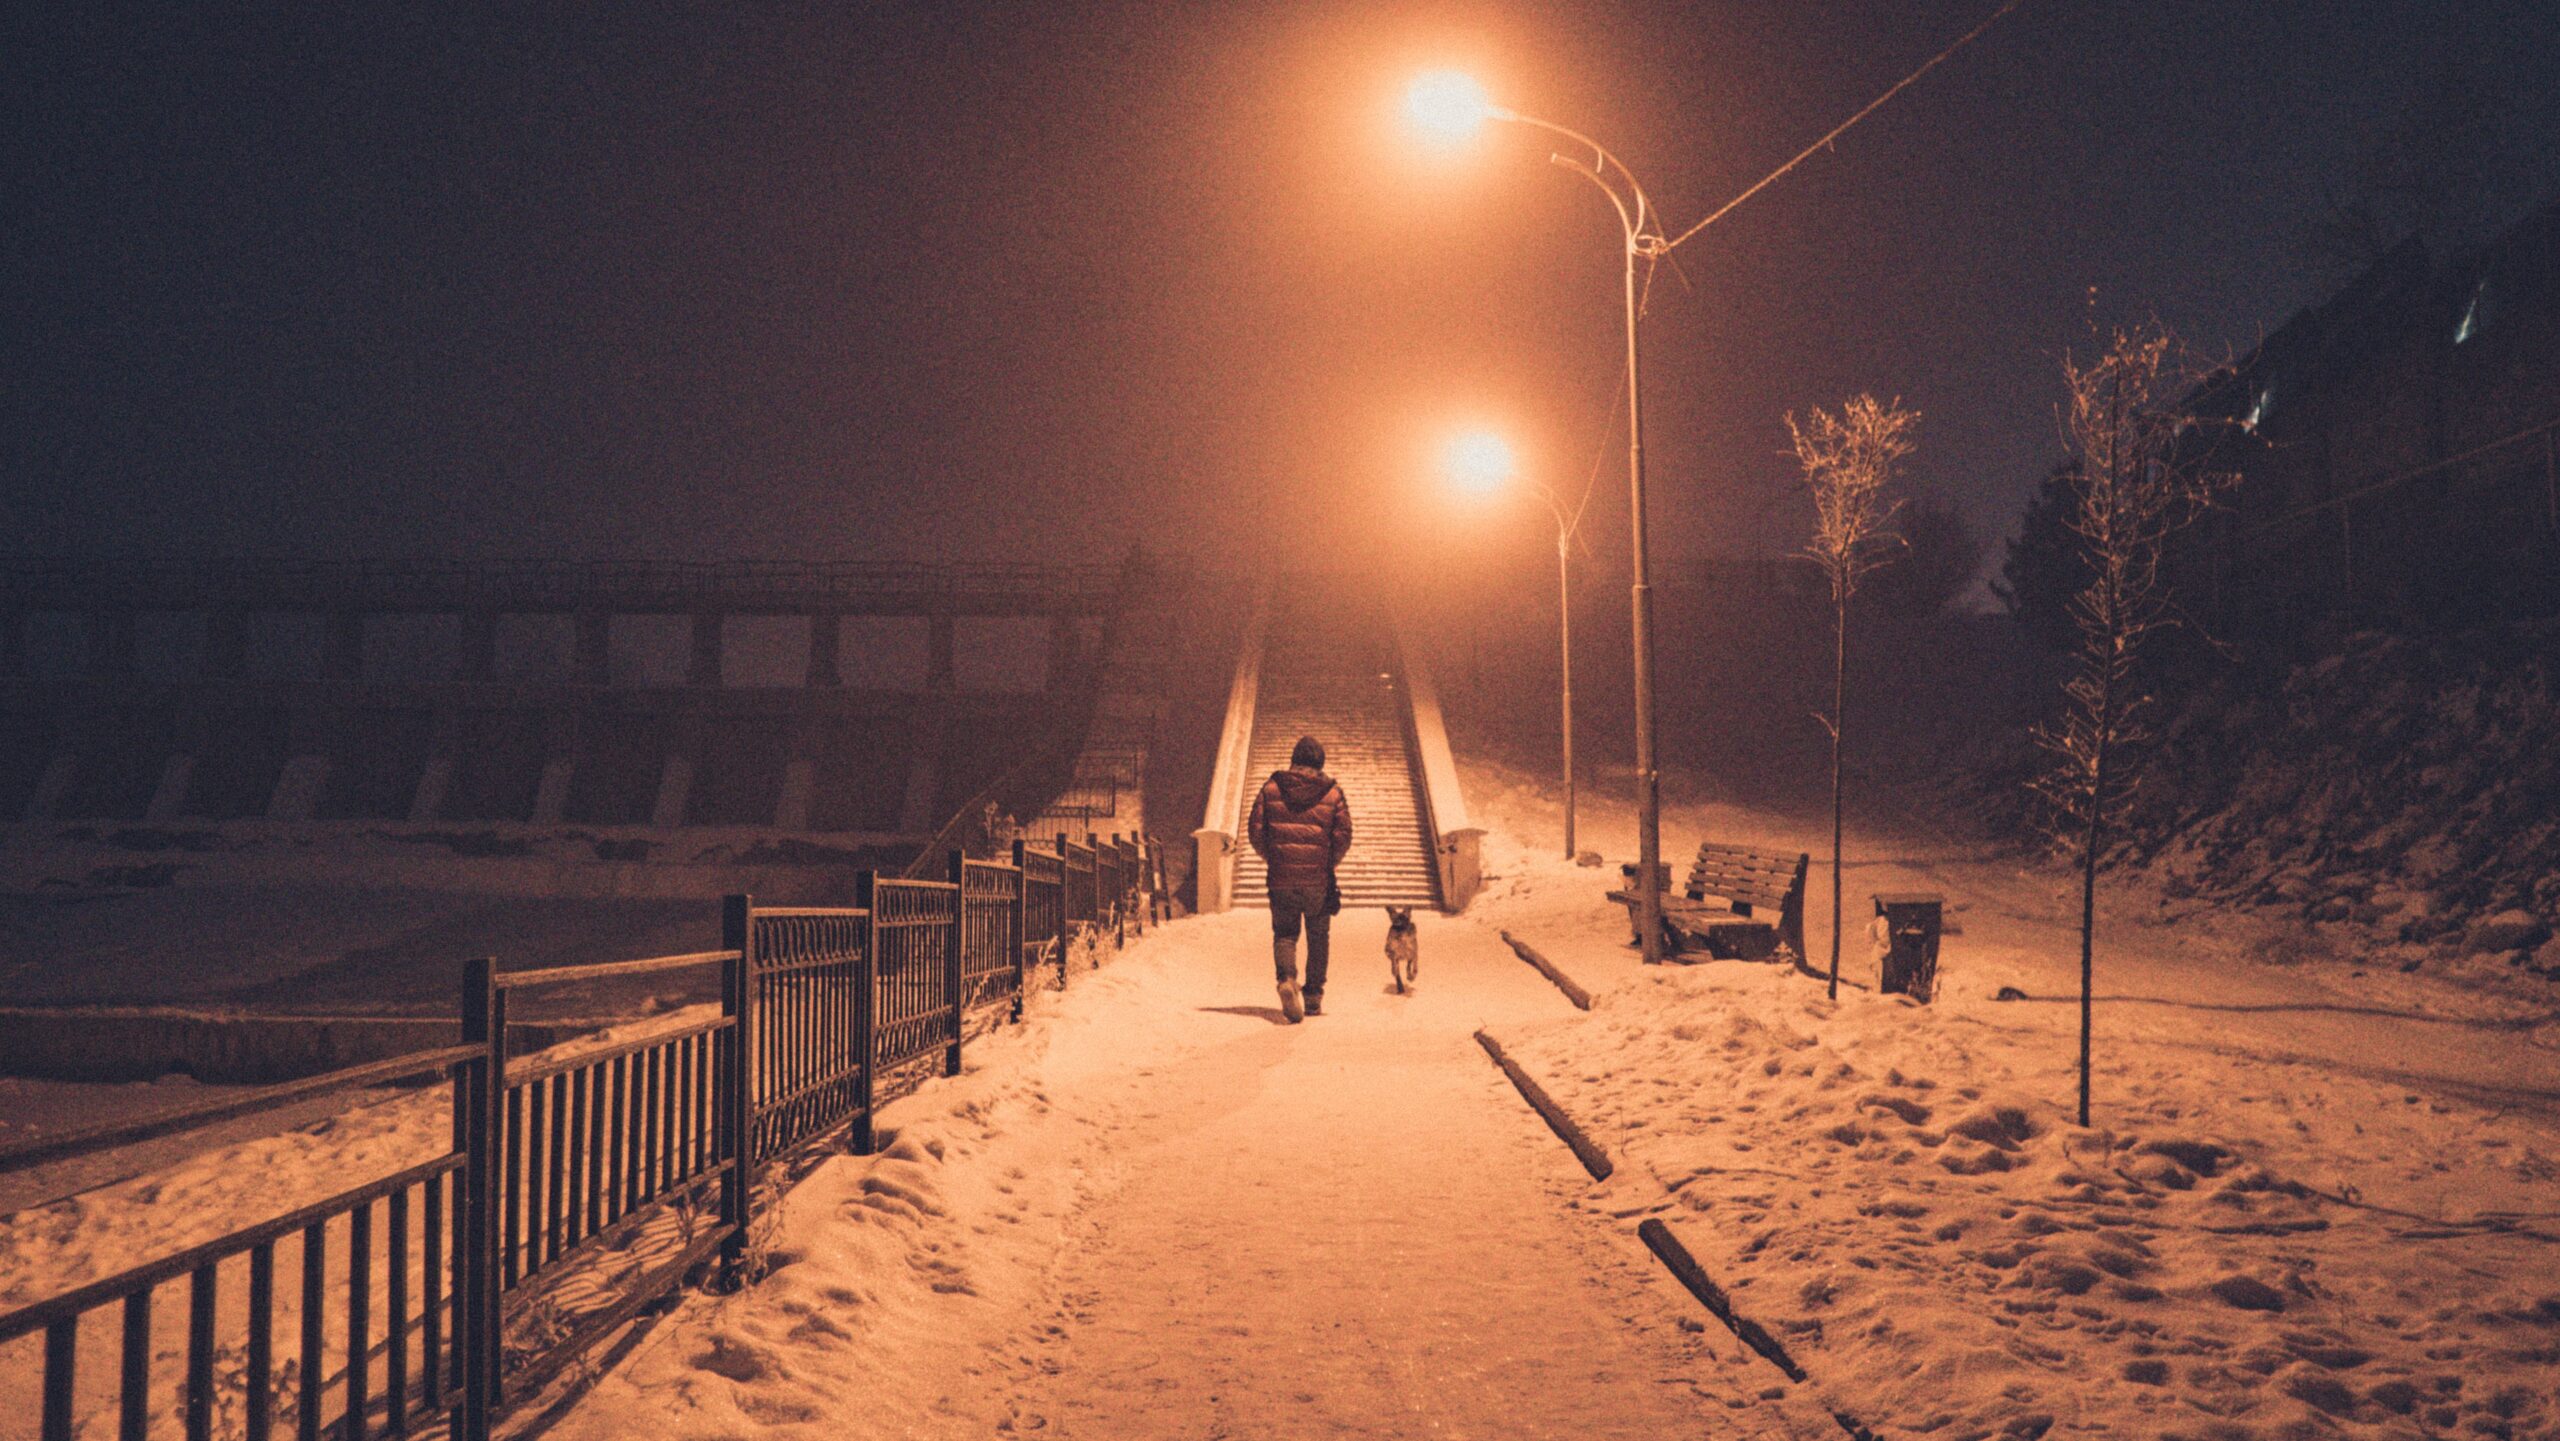 person walking dog at night